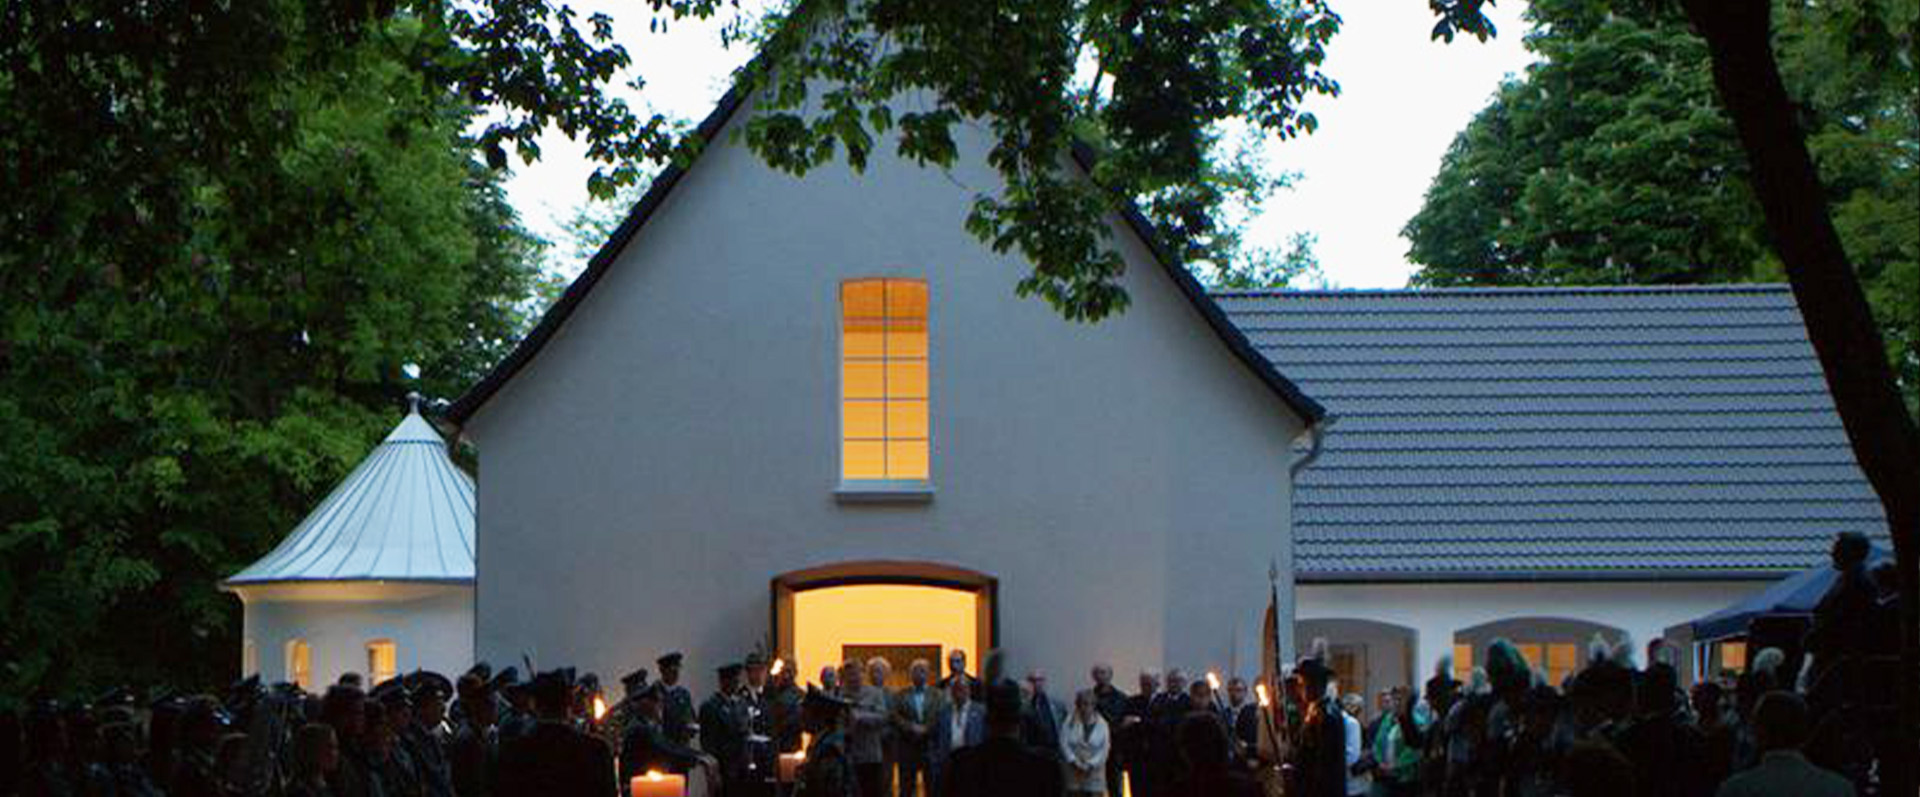 Friedenskirche Aufnahme bei Nacht